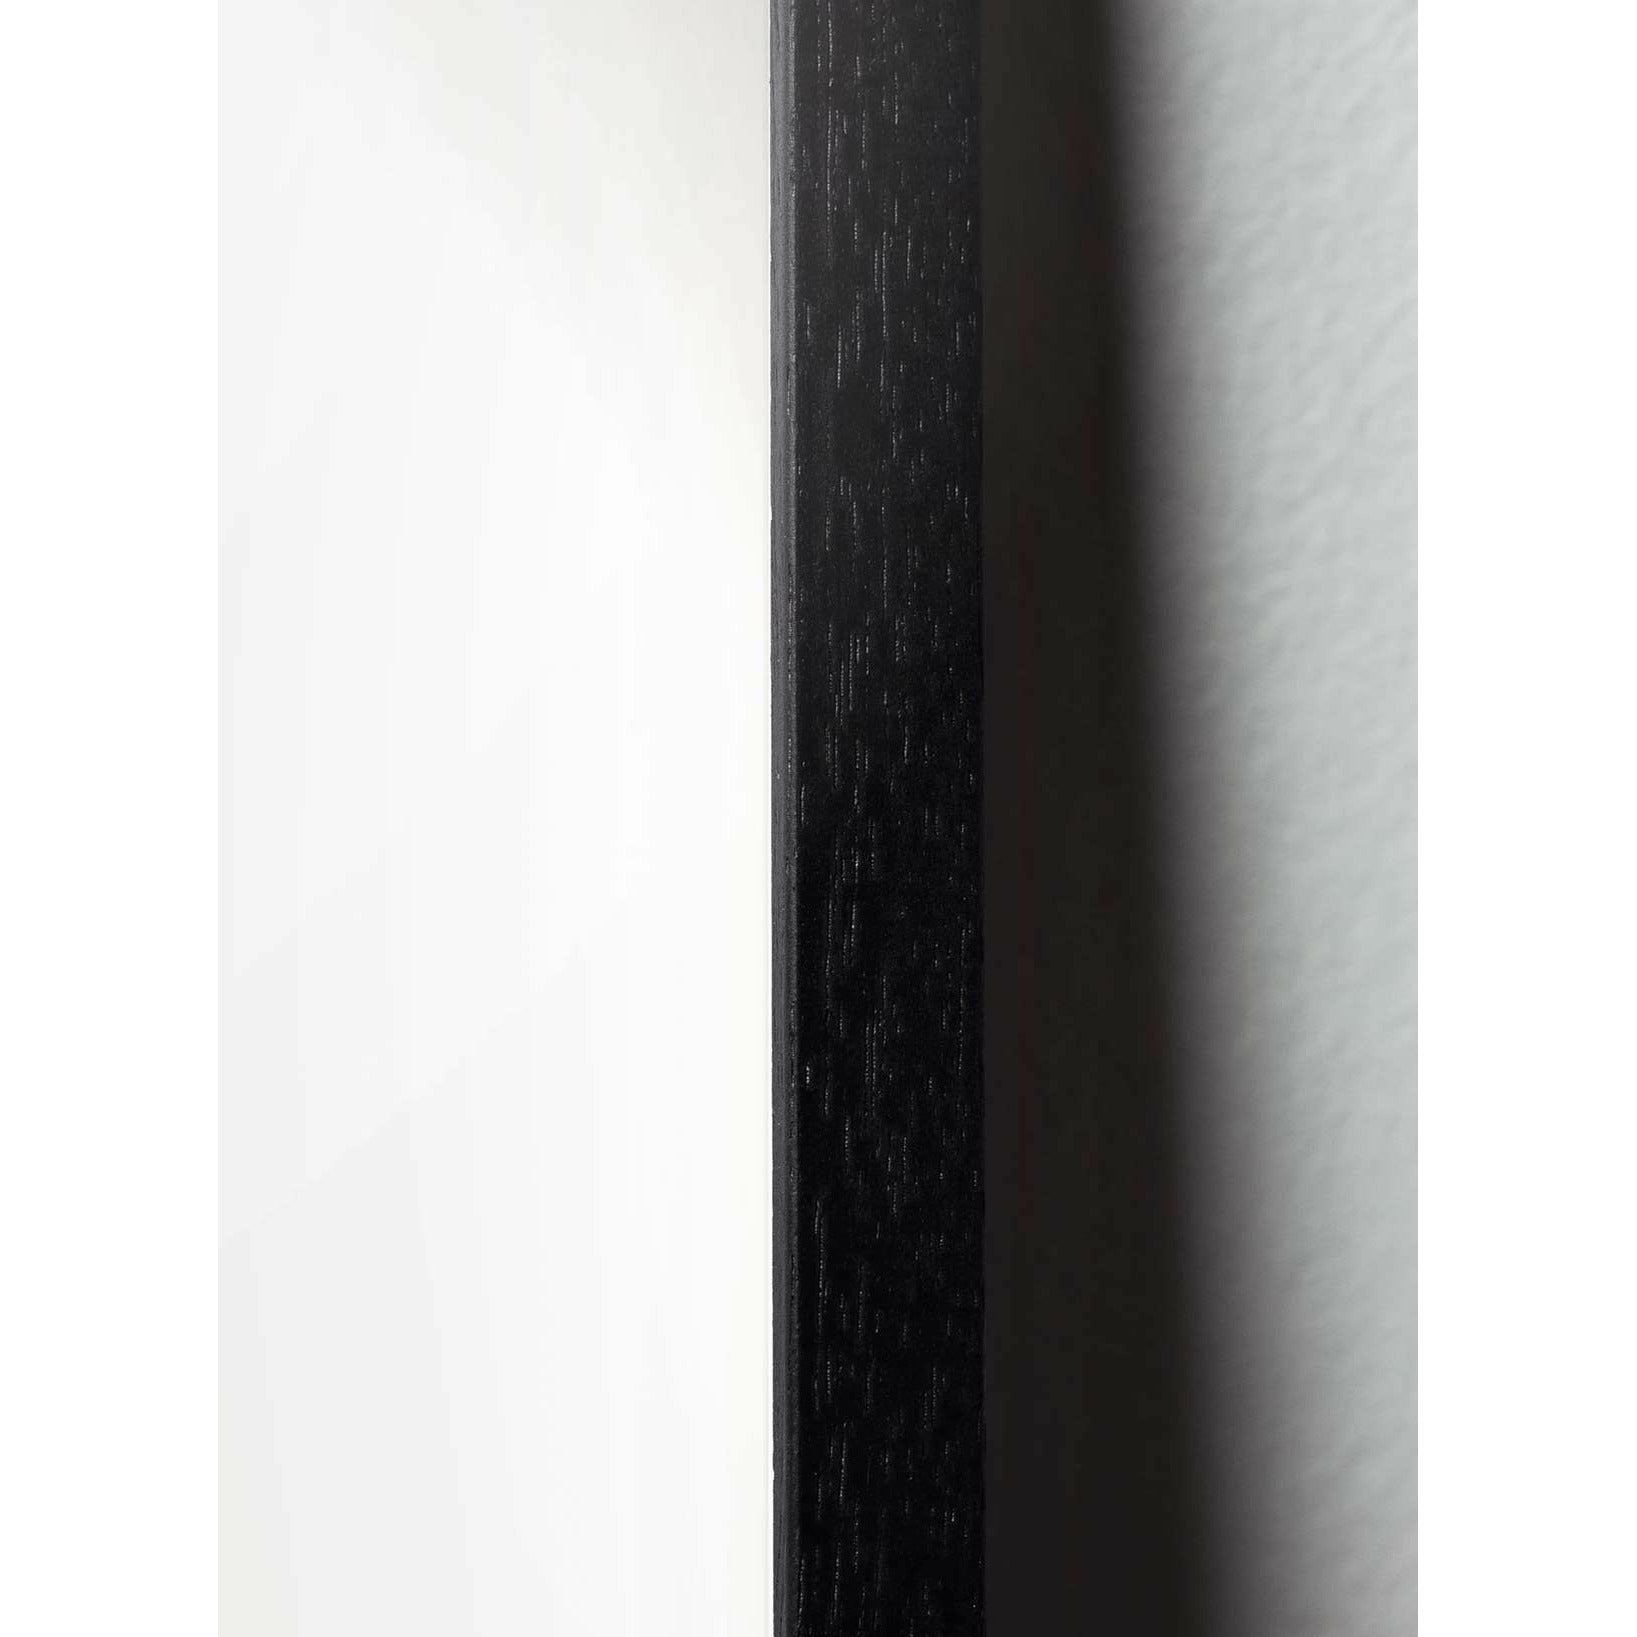 Póster clásico de hormigas de creación, marco en madera lacada negra 50x70 cm, fondo de color arena